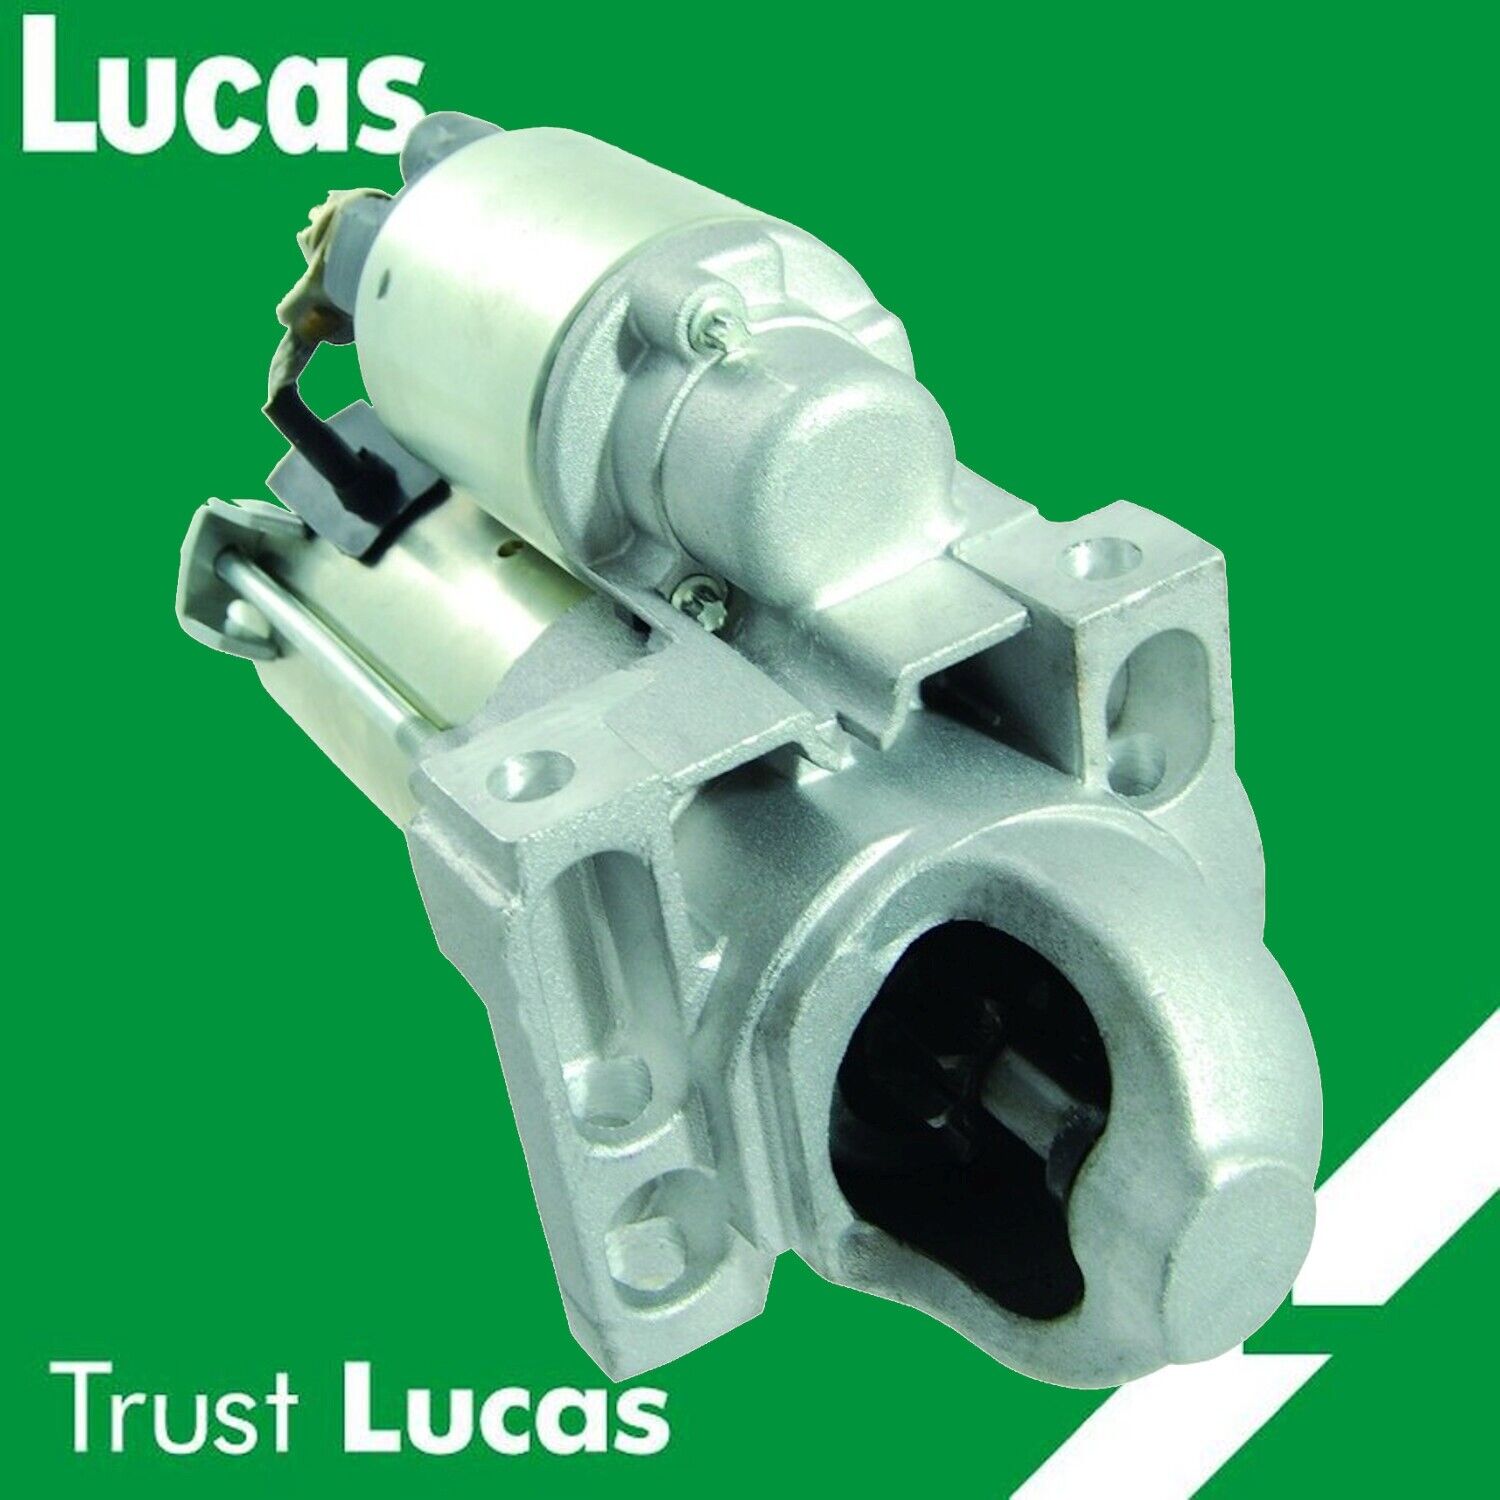 LUCAS STARTER FOR GMC SIERRA 1500 V8 5.3L 09-13 323-1662 6970 28655